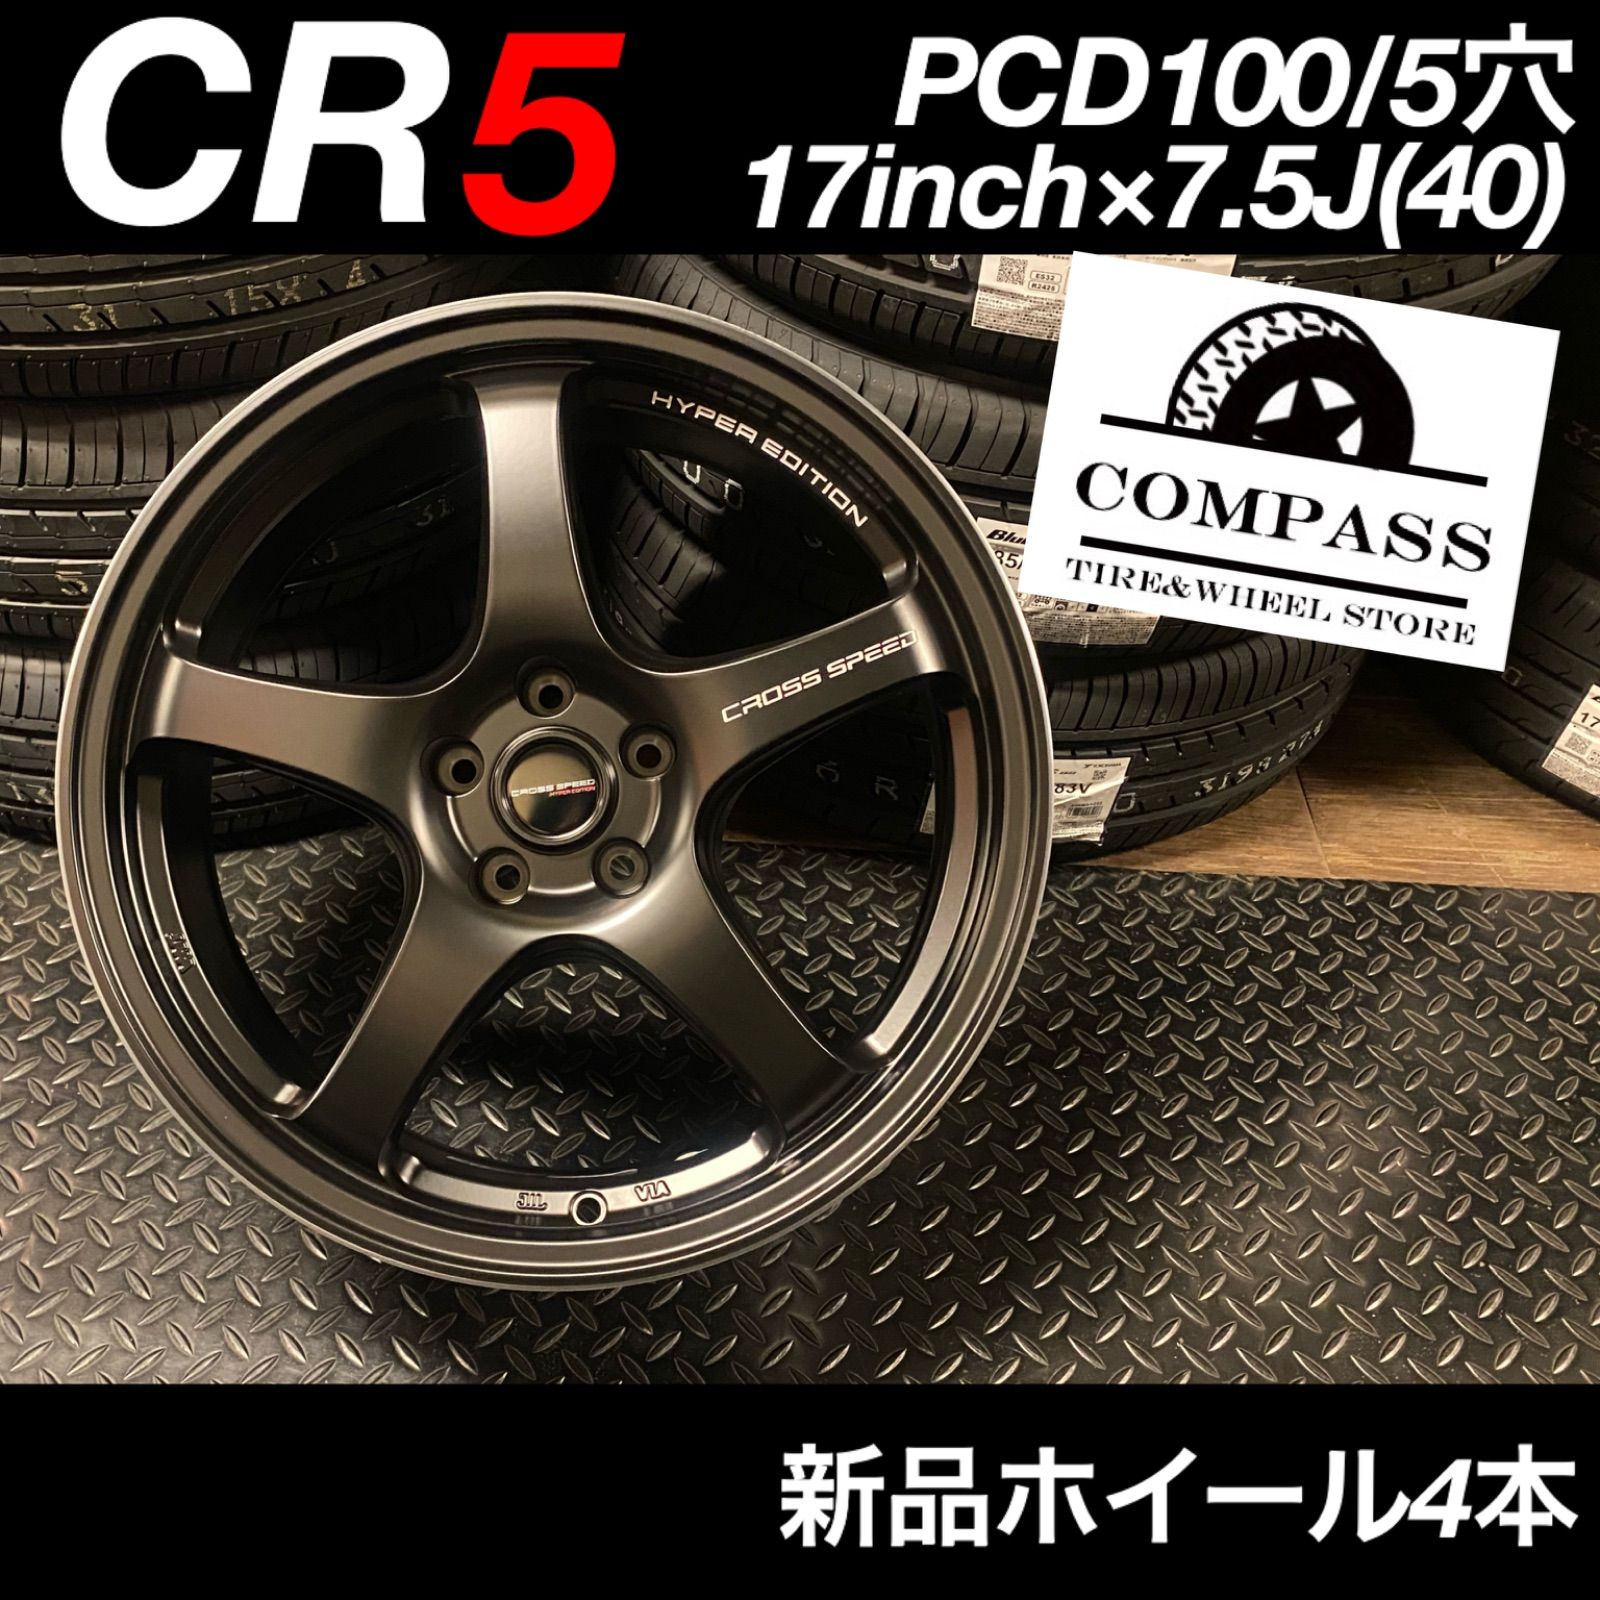 ◇新品◇CR5 17inch×7.5J(40) PCD100/5穴 ホイール4本 - ComPass